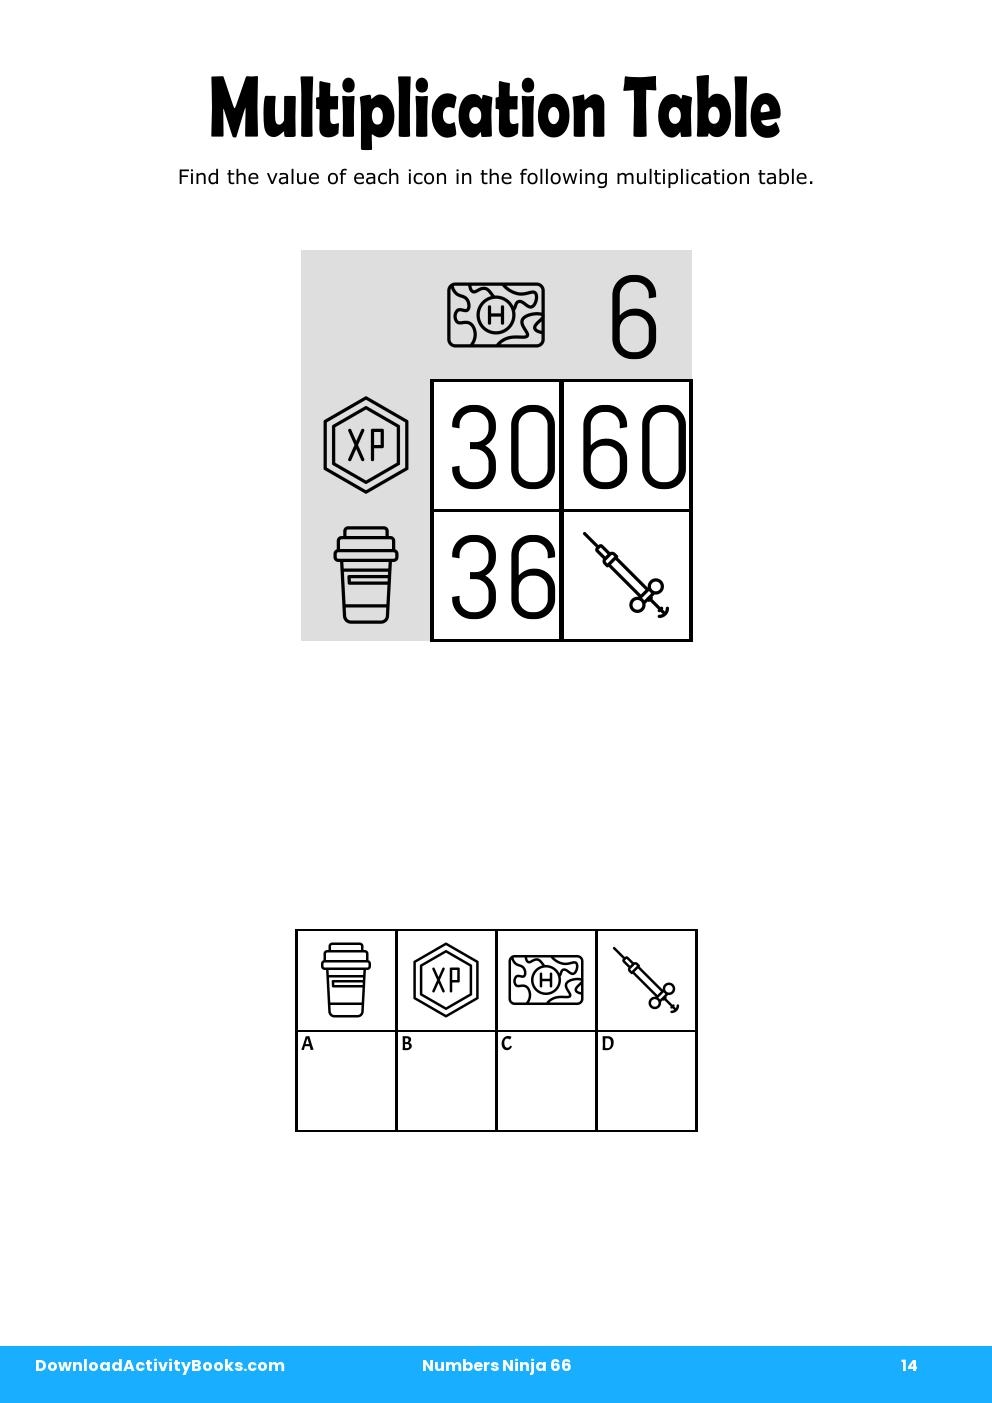 Multiplication Table in Numbers Ninja 66